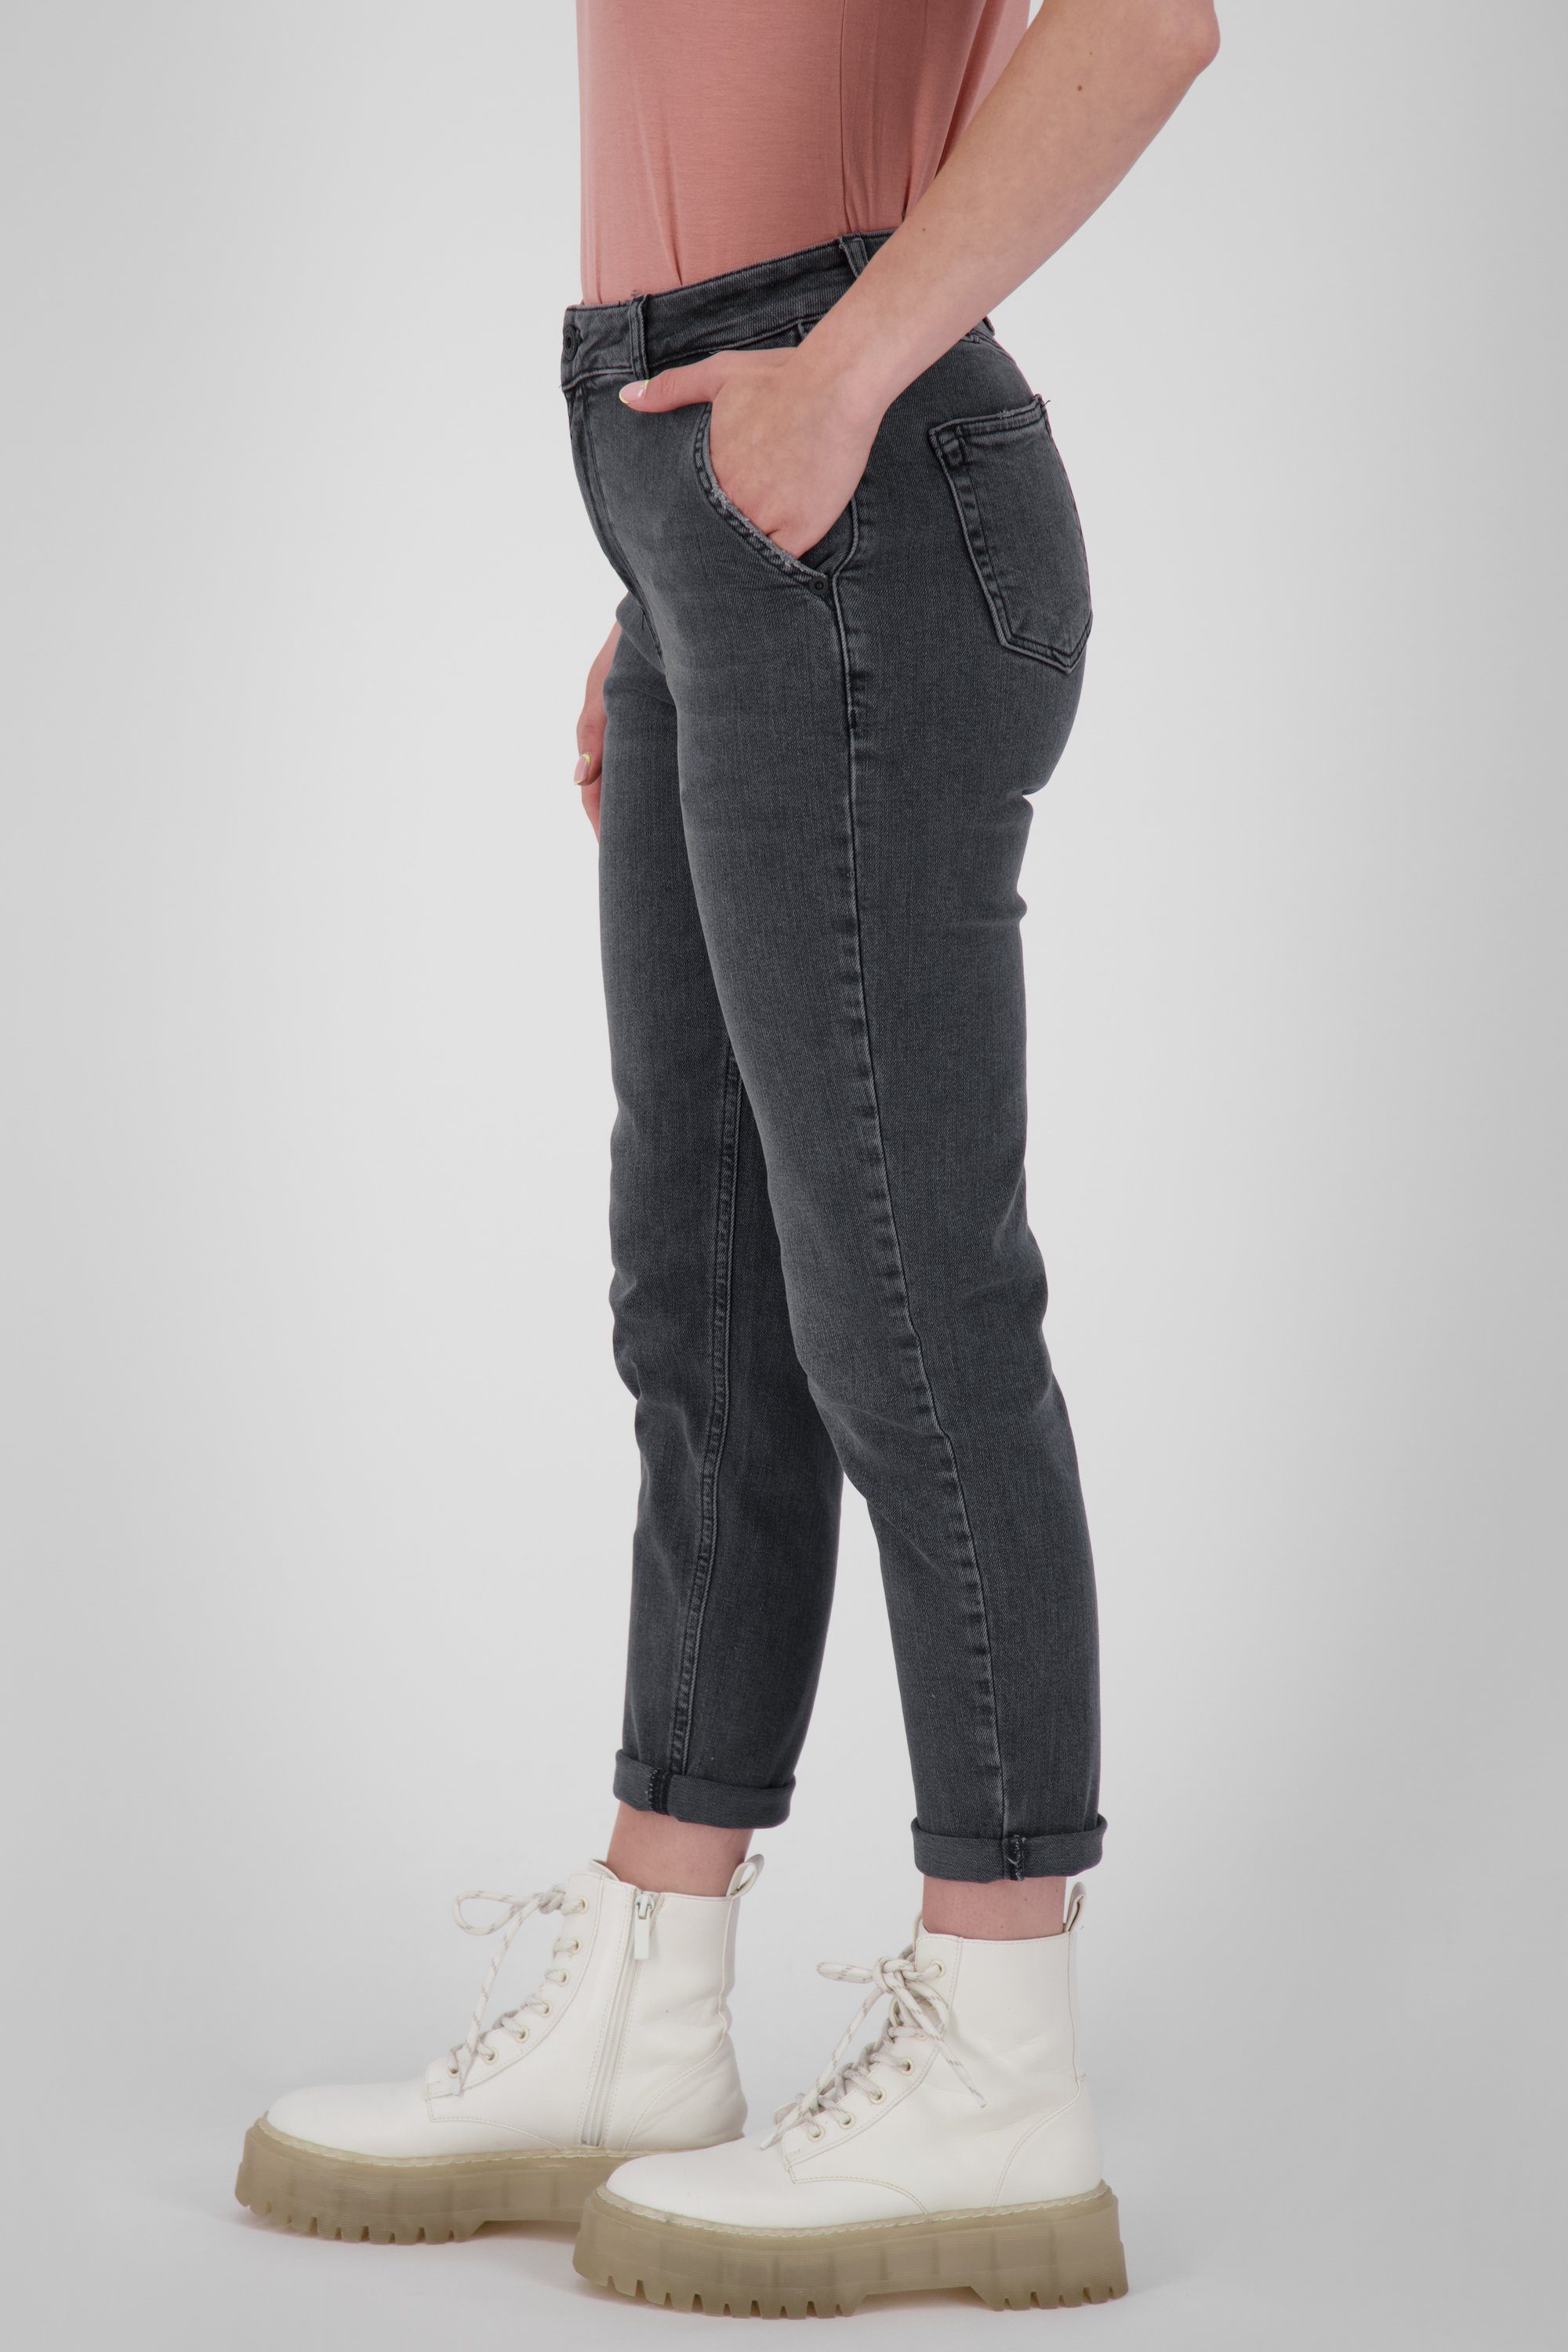 Alife & Kickin Mom-Jeans Jeanshose Damen Pants Q LaureenAK DNM